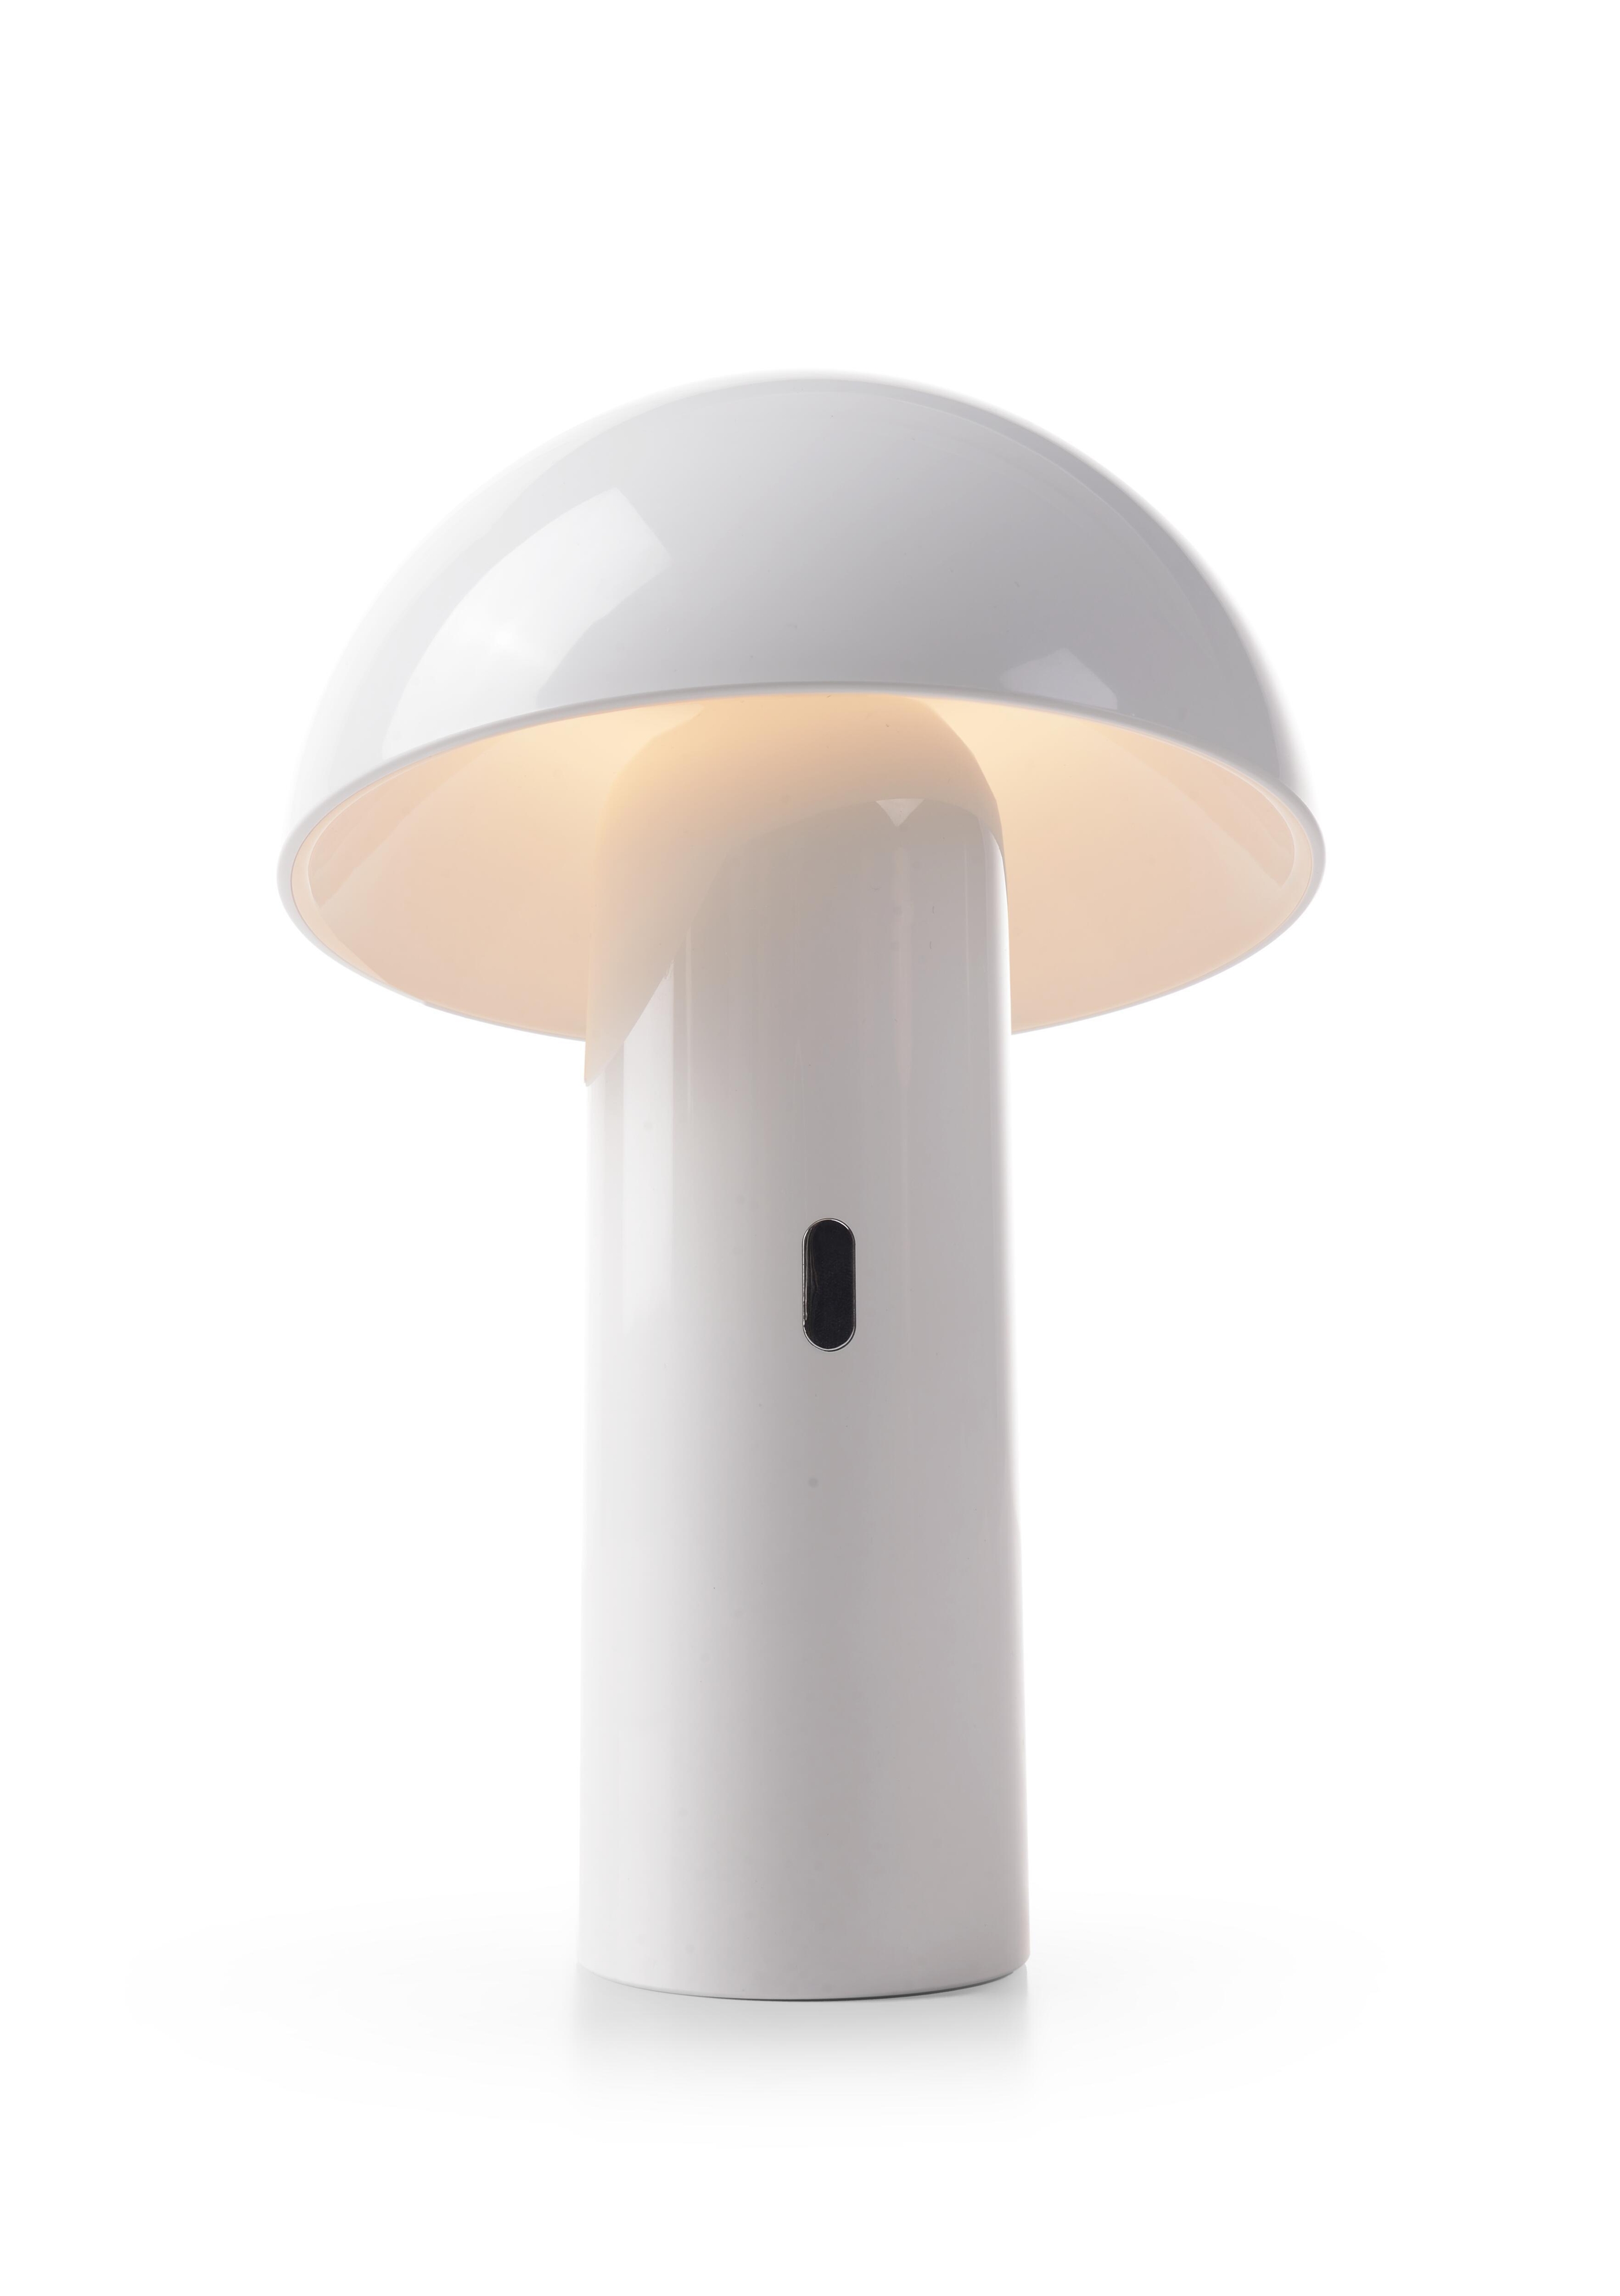 Lampada Da Esterno Enoki bianco H 26.5 cm,in alluminio, luce bianco caldo , LED integrato 7W 170LM IP44 NEWGARDEN - 3